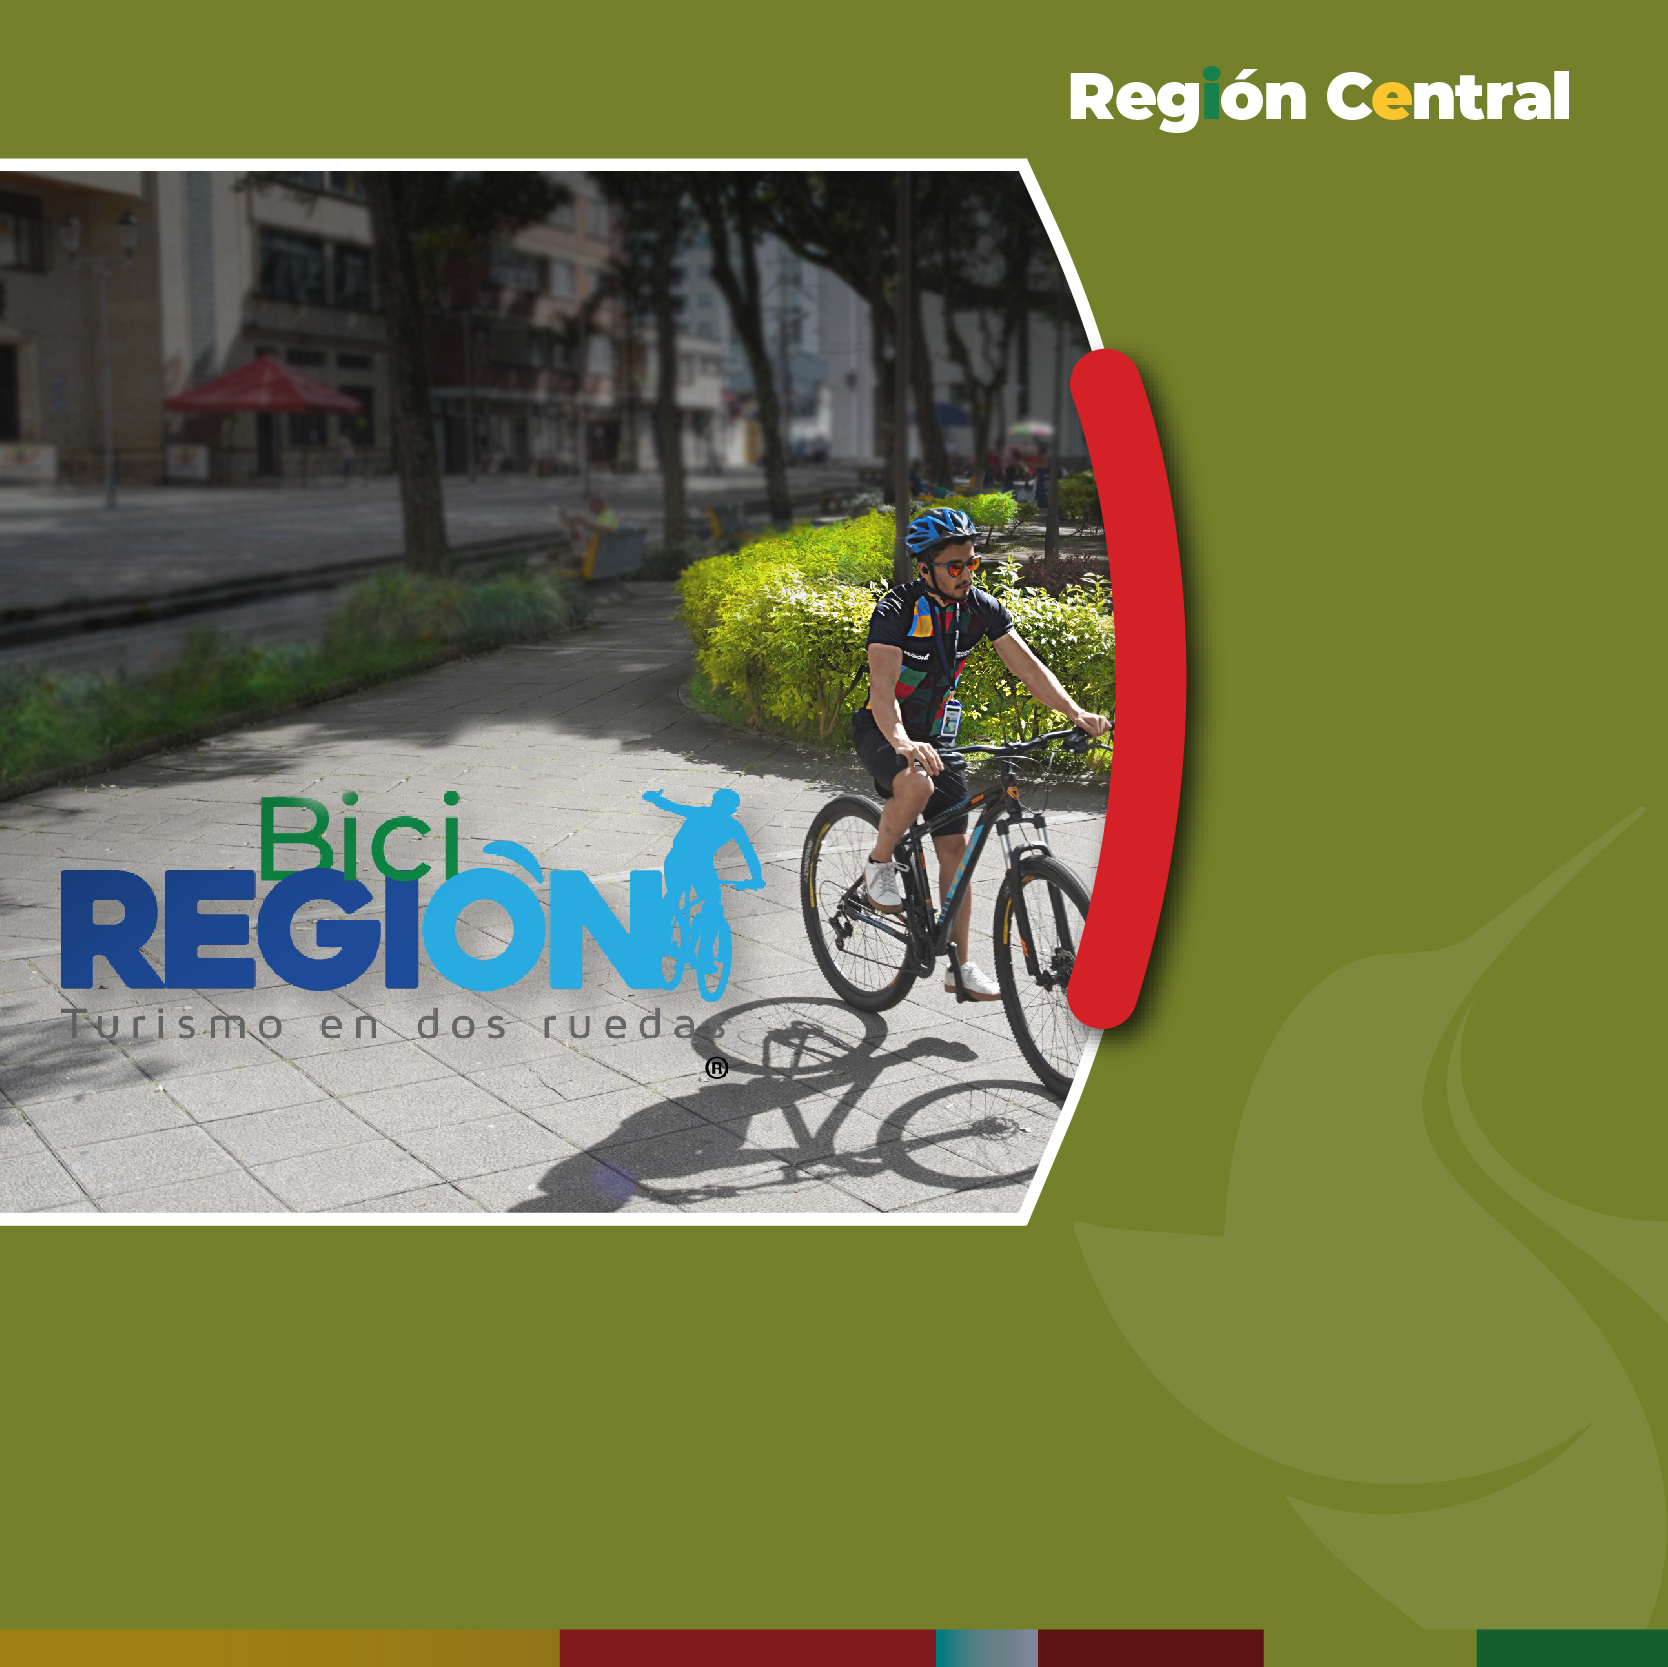 ‘BiciRegión, turismo en dos ruedas’, ya es una marca registrada